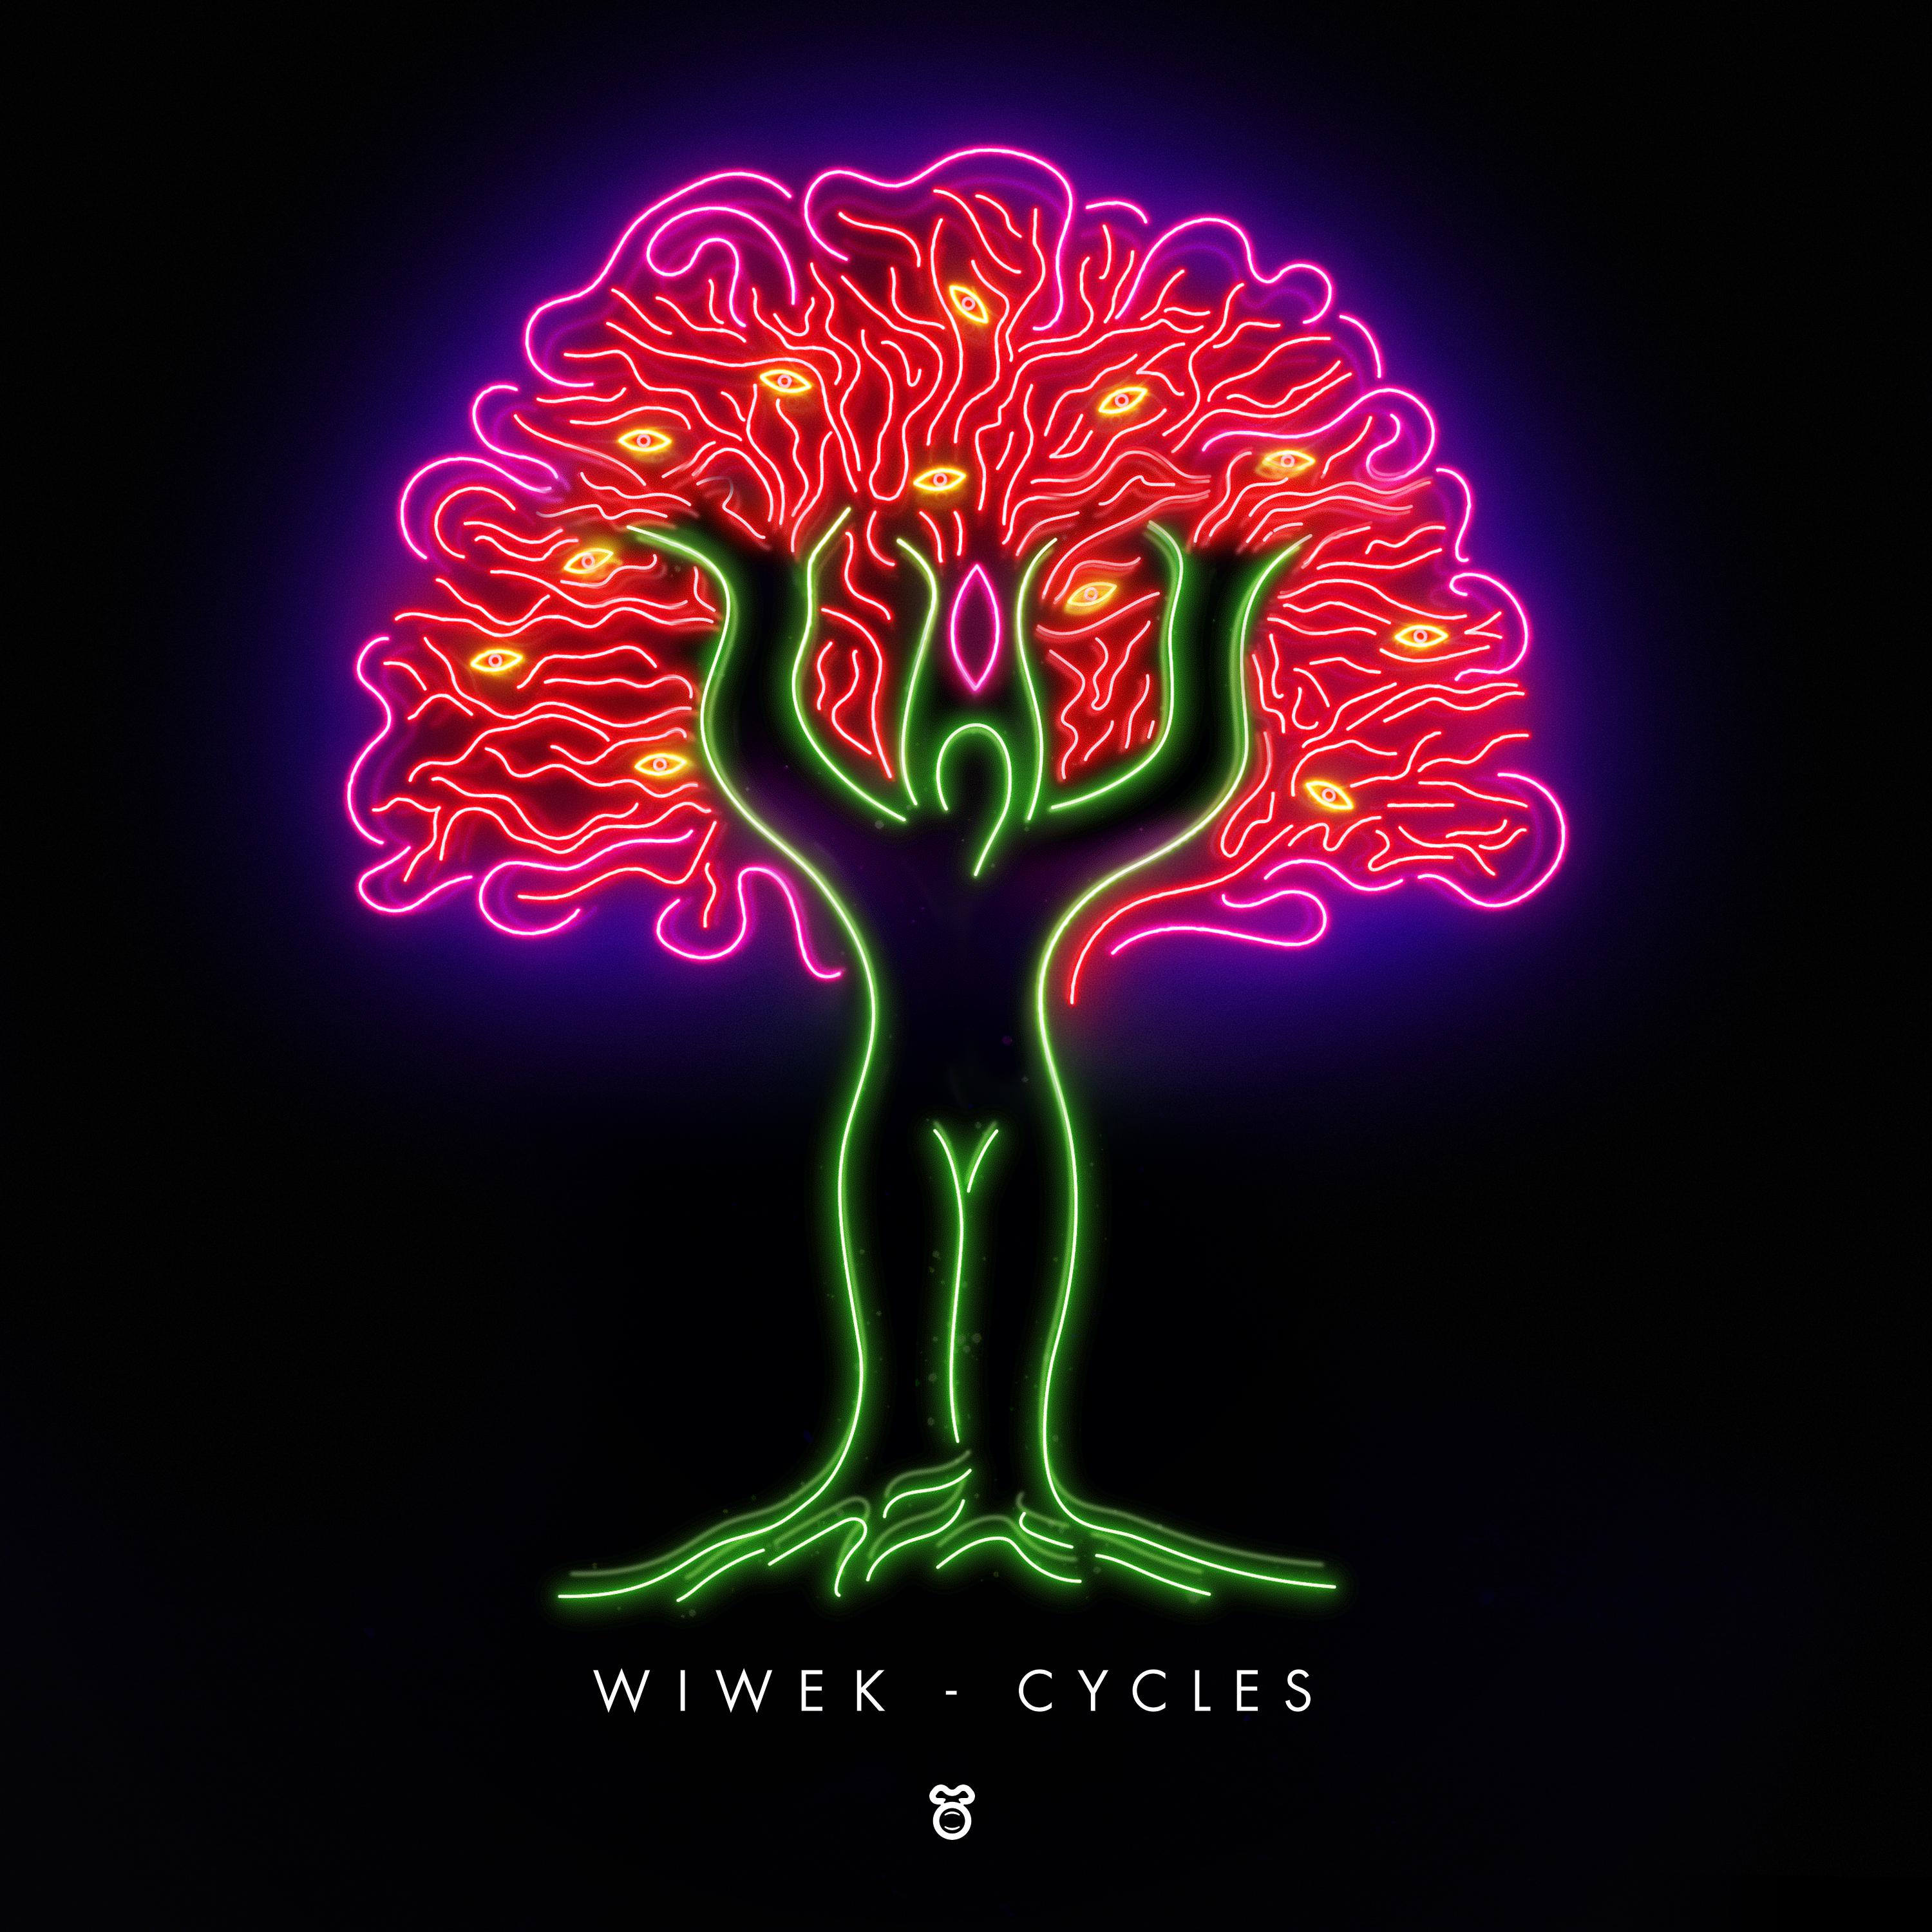 CYCLES专辑